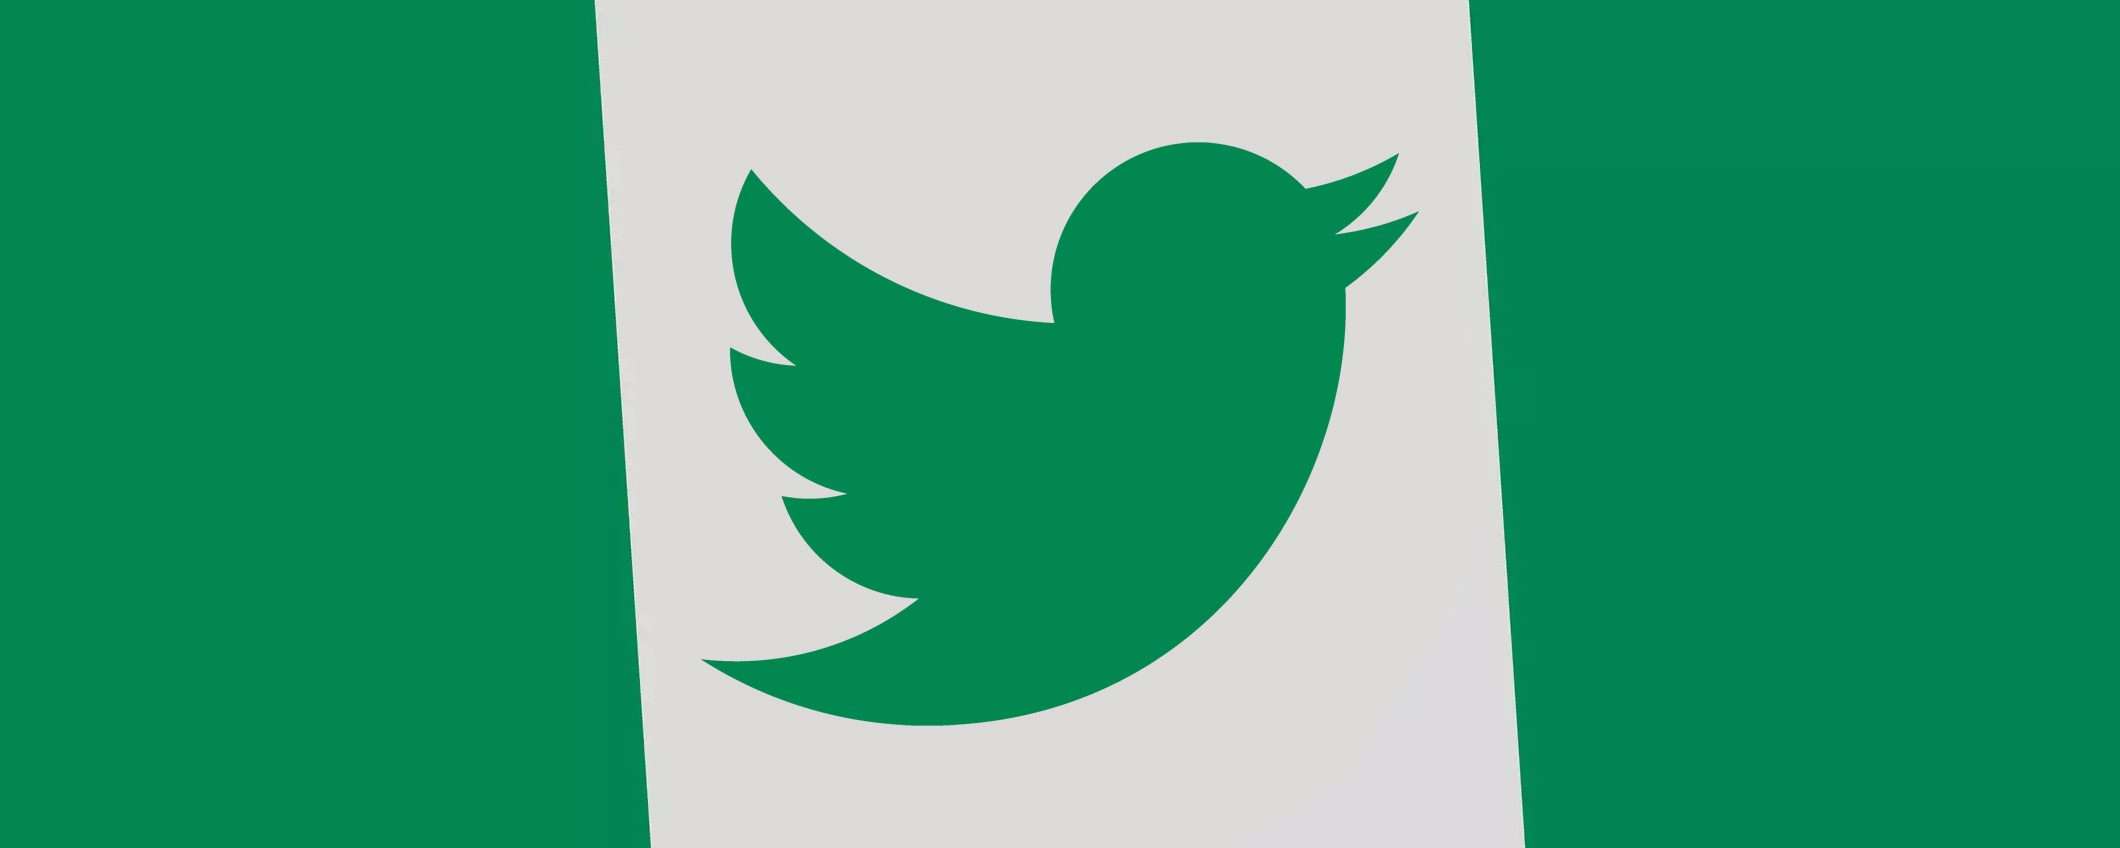 La Nigeria ha tolto il ban di Twitter (dopo 7 mesi)